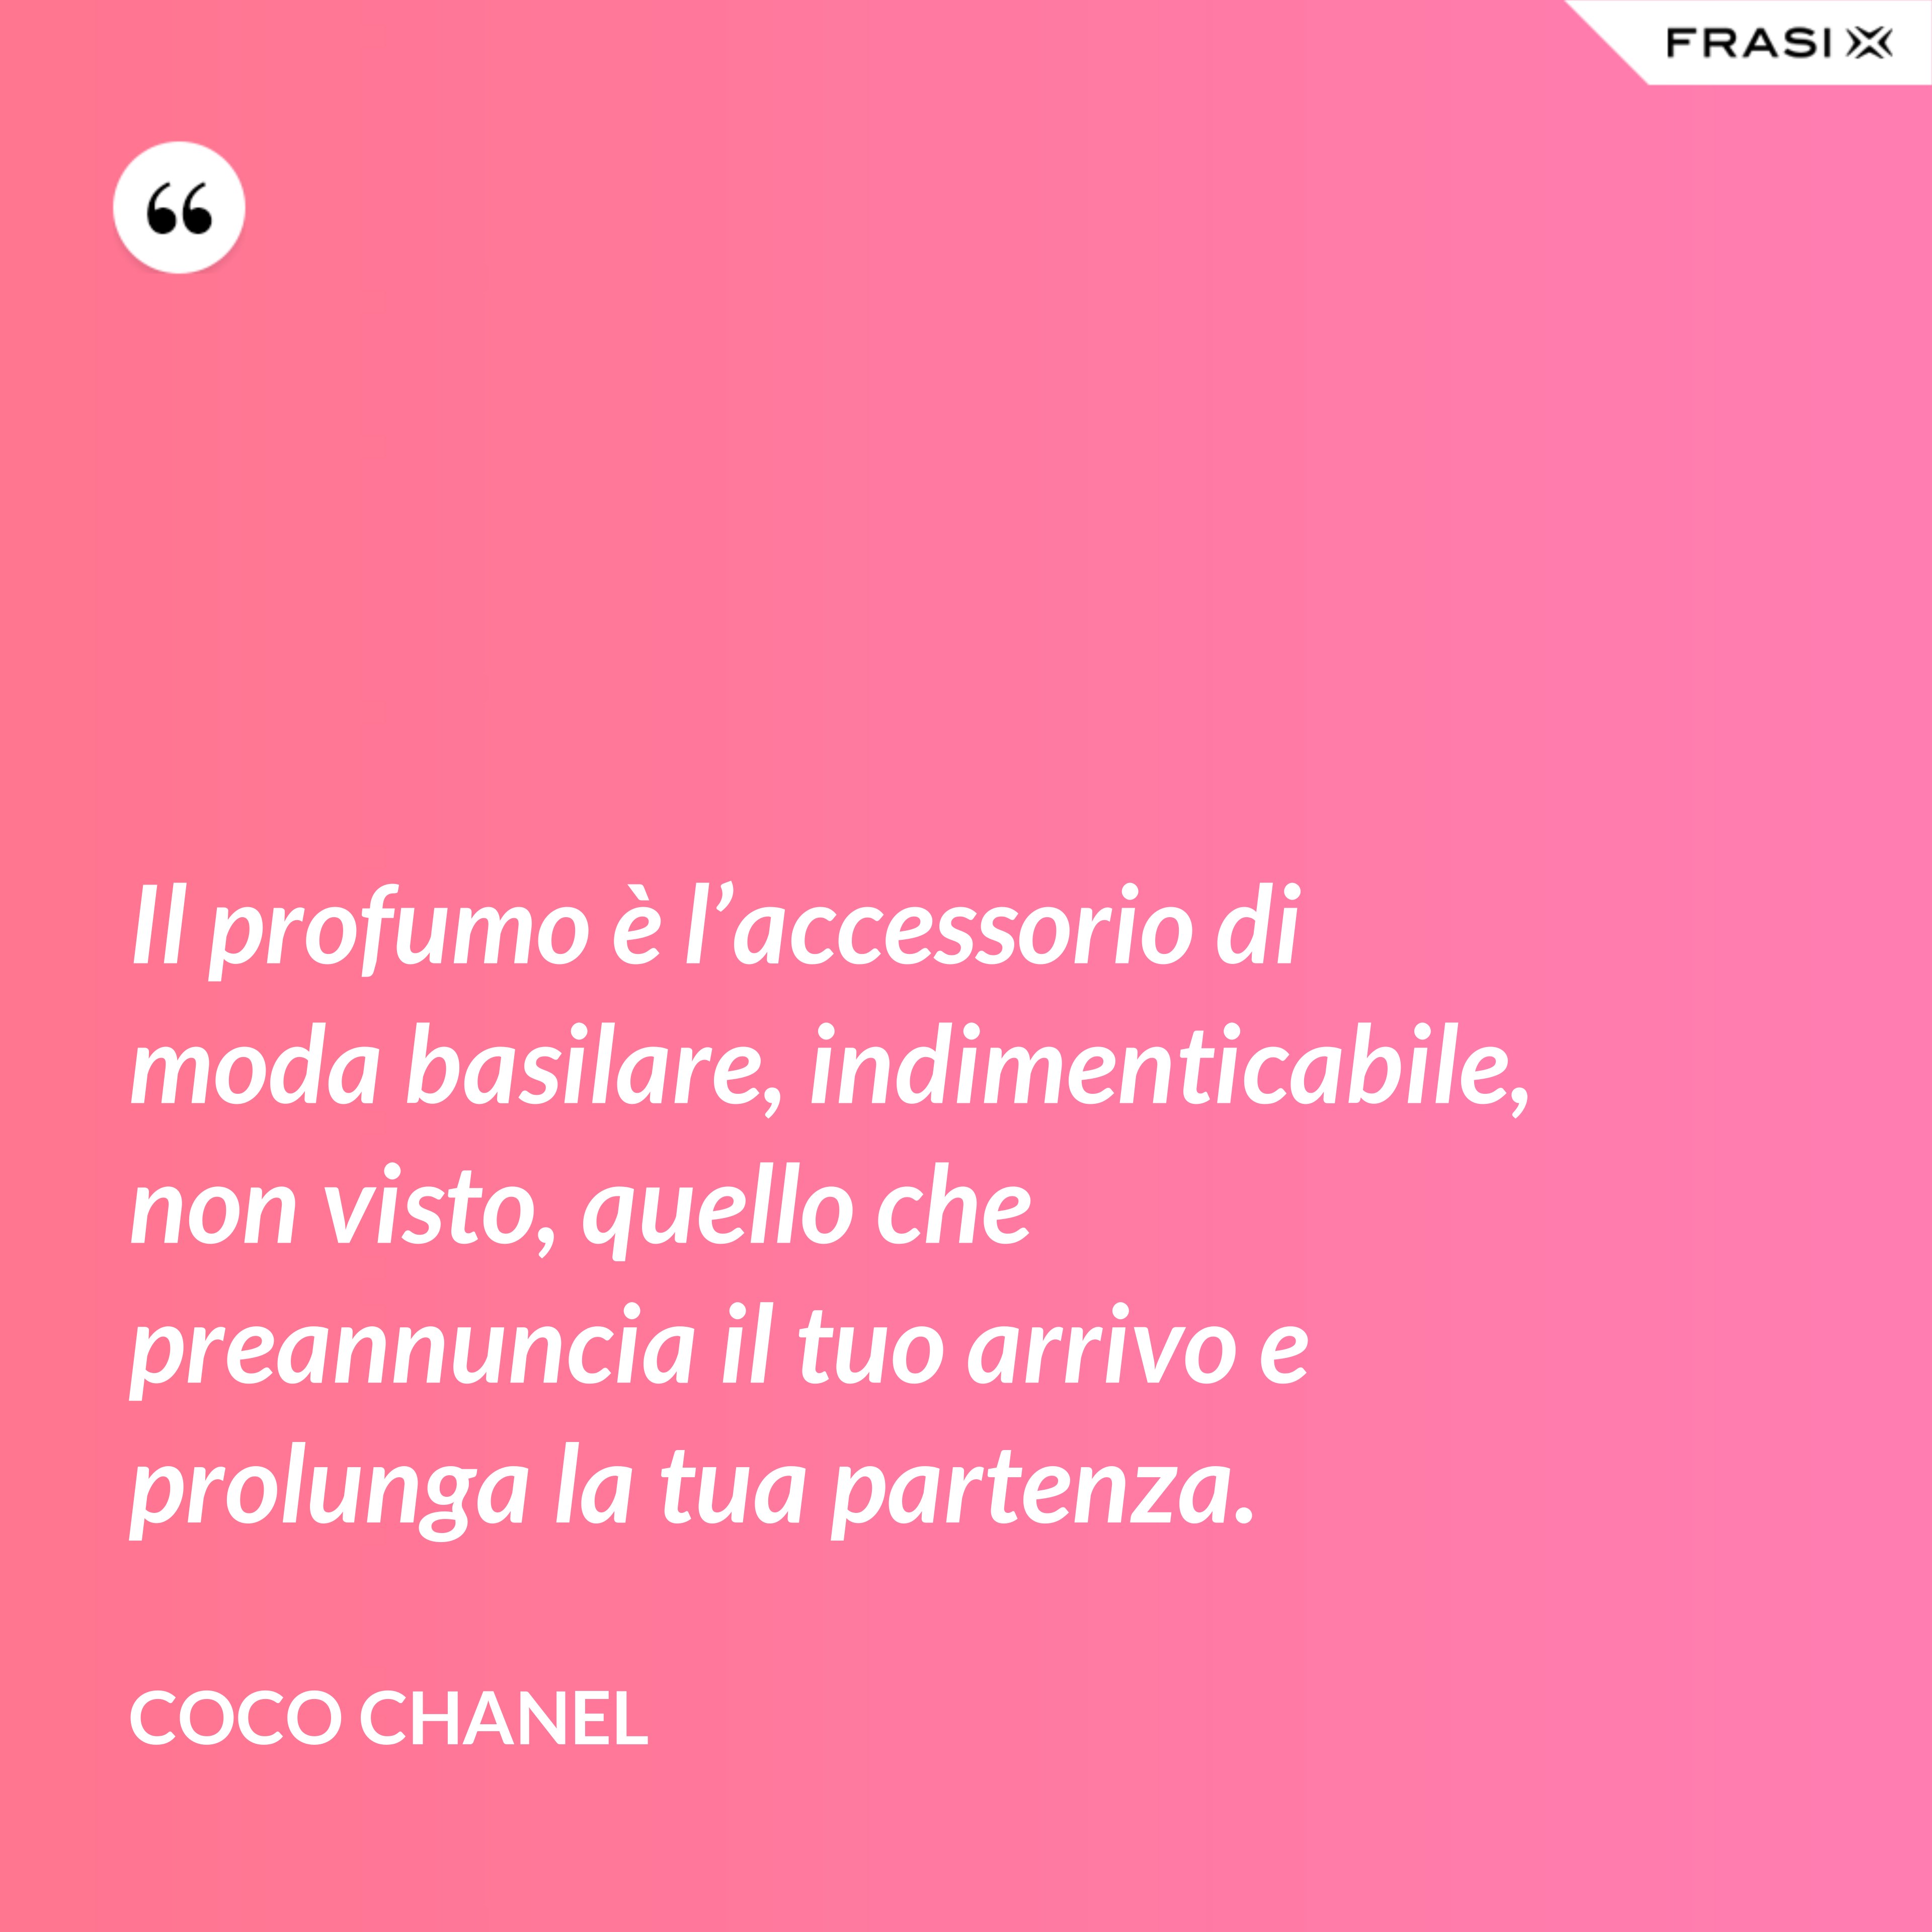 Il profumo è l’accessorio di moda basilare, indimenticabile, non visto, quello che preannuncia il tuo arrivo e prolunga la tua partenza. - Coco Chanel